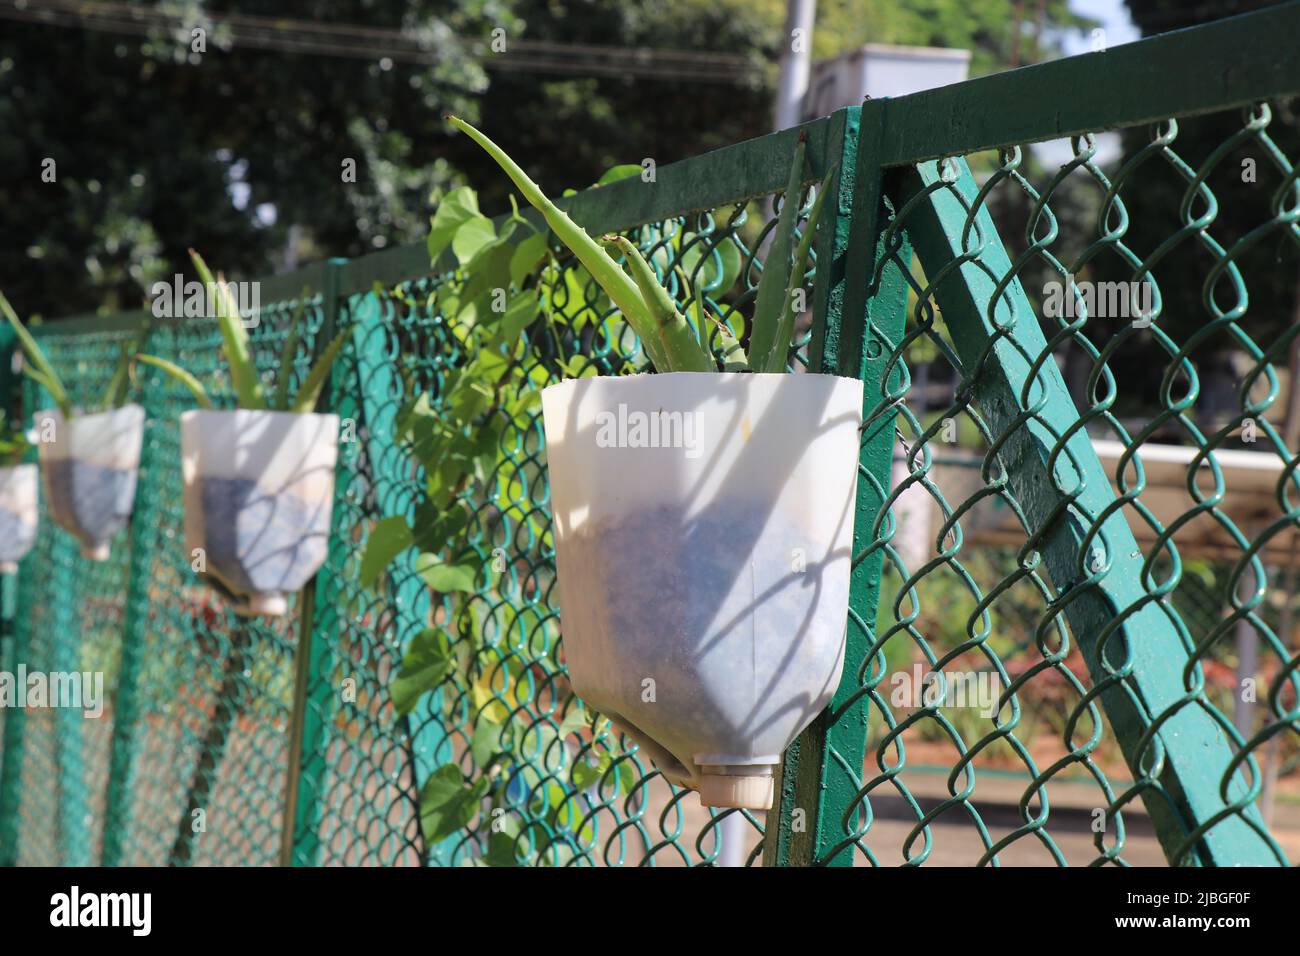 Des boîtes de plastique recyclées utilisées comme jardinière pour cultiver des plantes médicinales de l'aloe vera accrochées à une clôture en métal en filet Banque D'Images